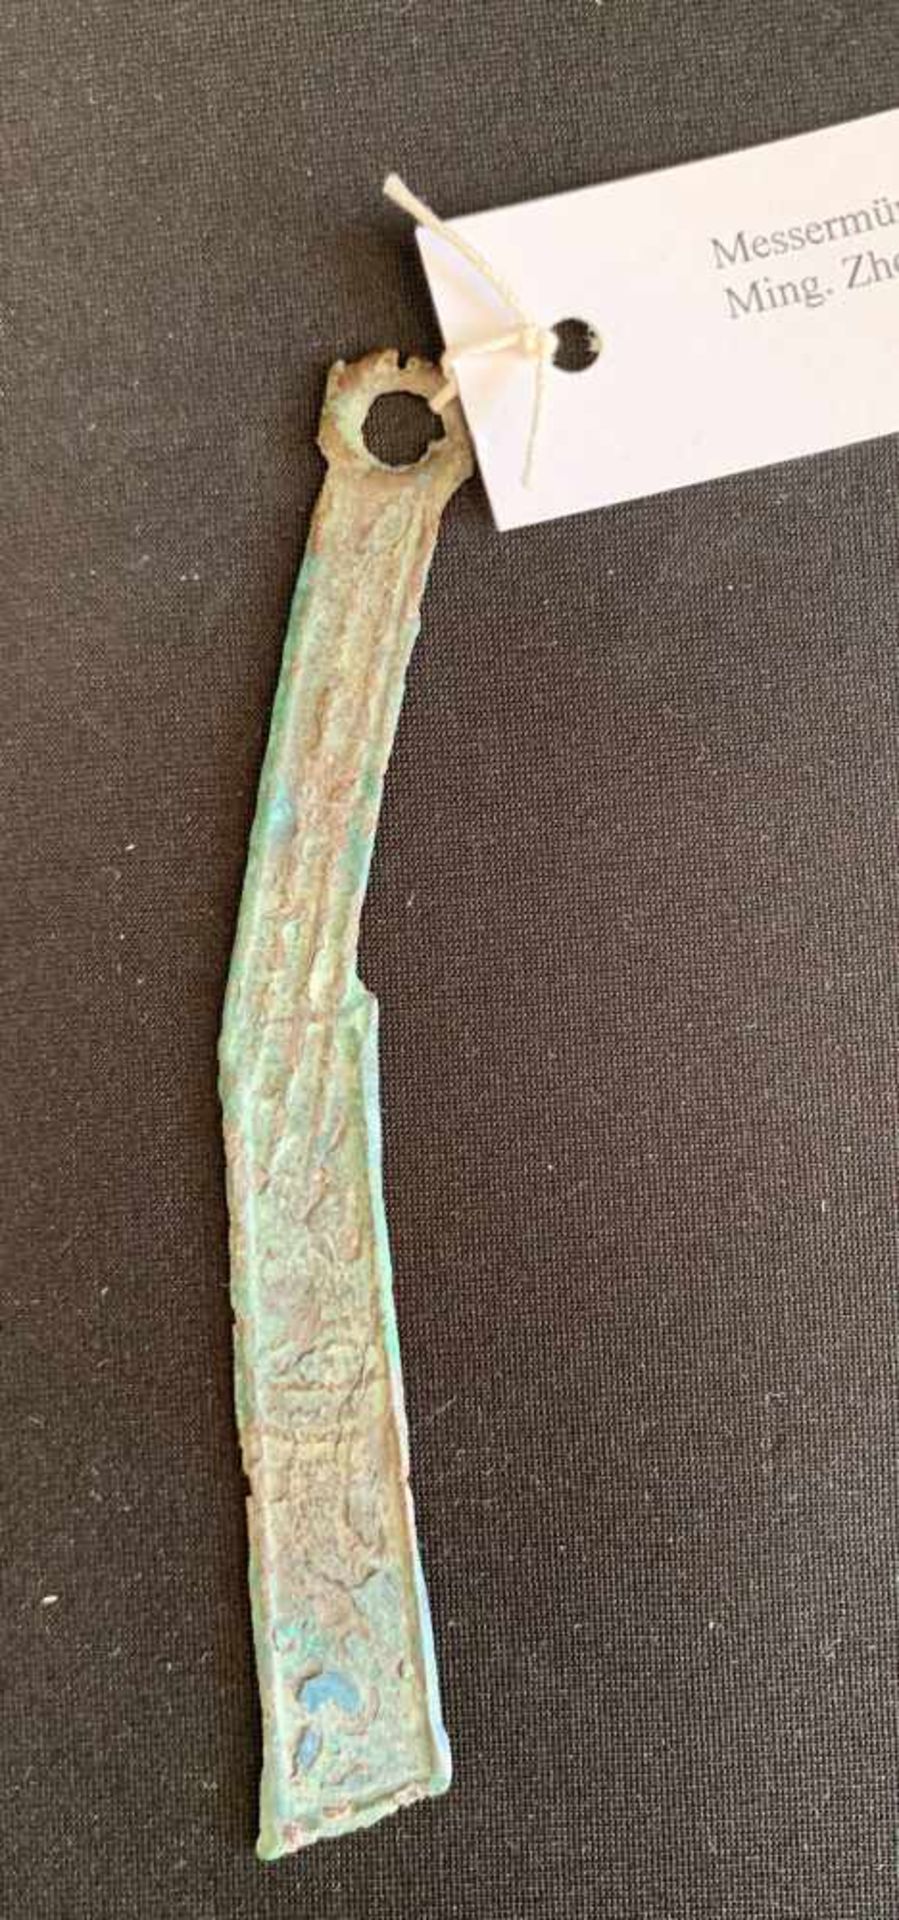 Messermünze. China, Bronze, Stadt Ming. Zhou-Zeit, 221 v. Chr., Länge 13,7 cm